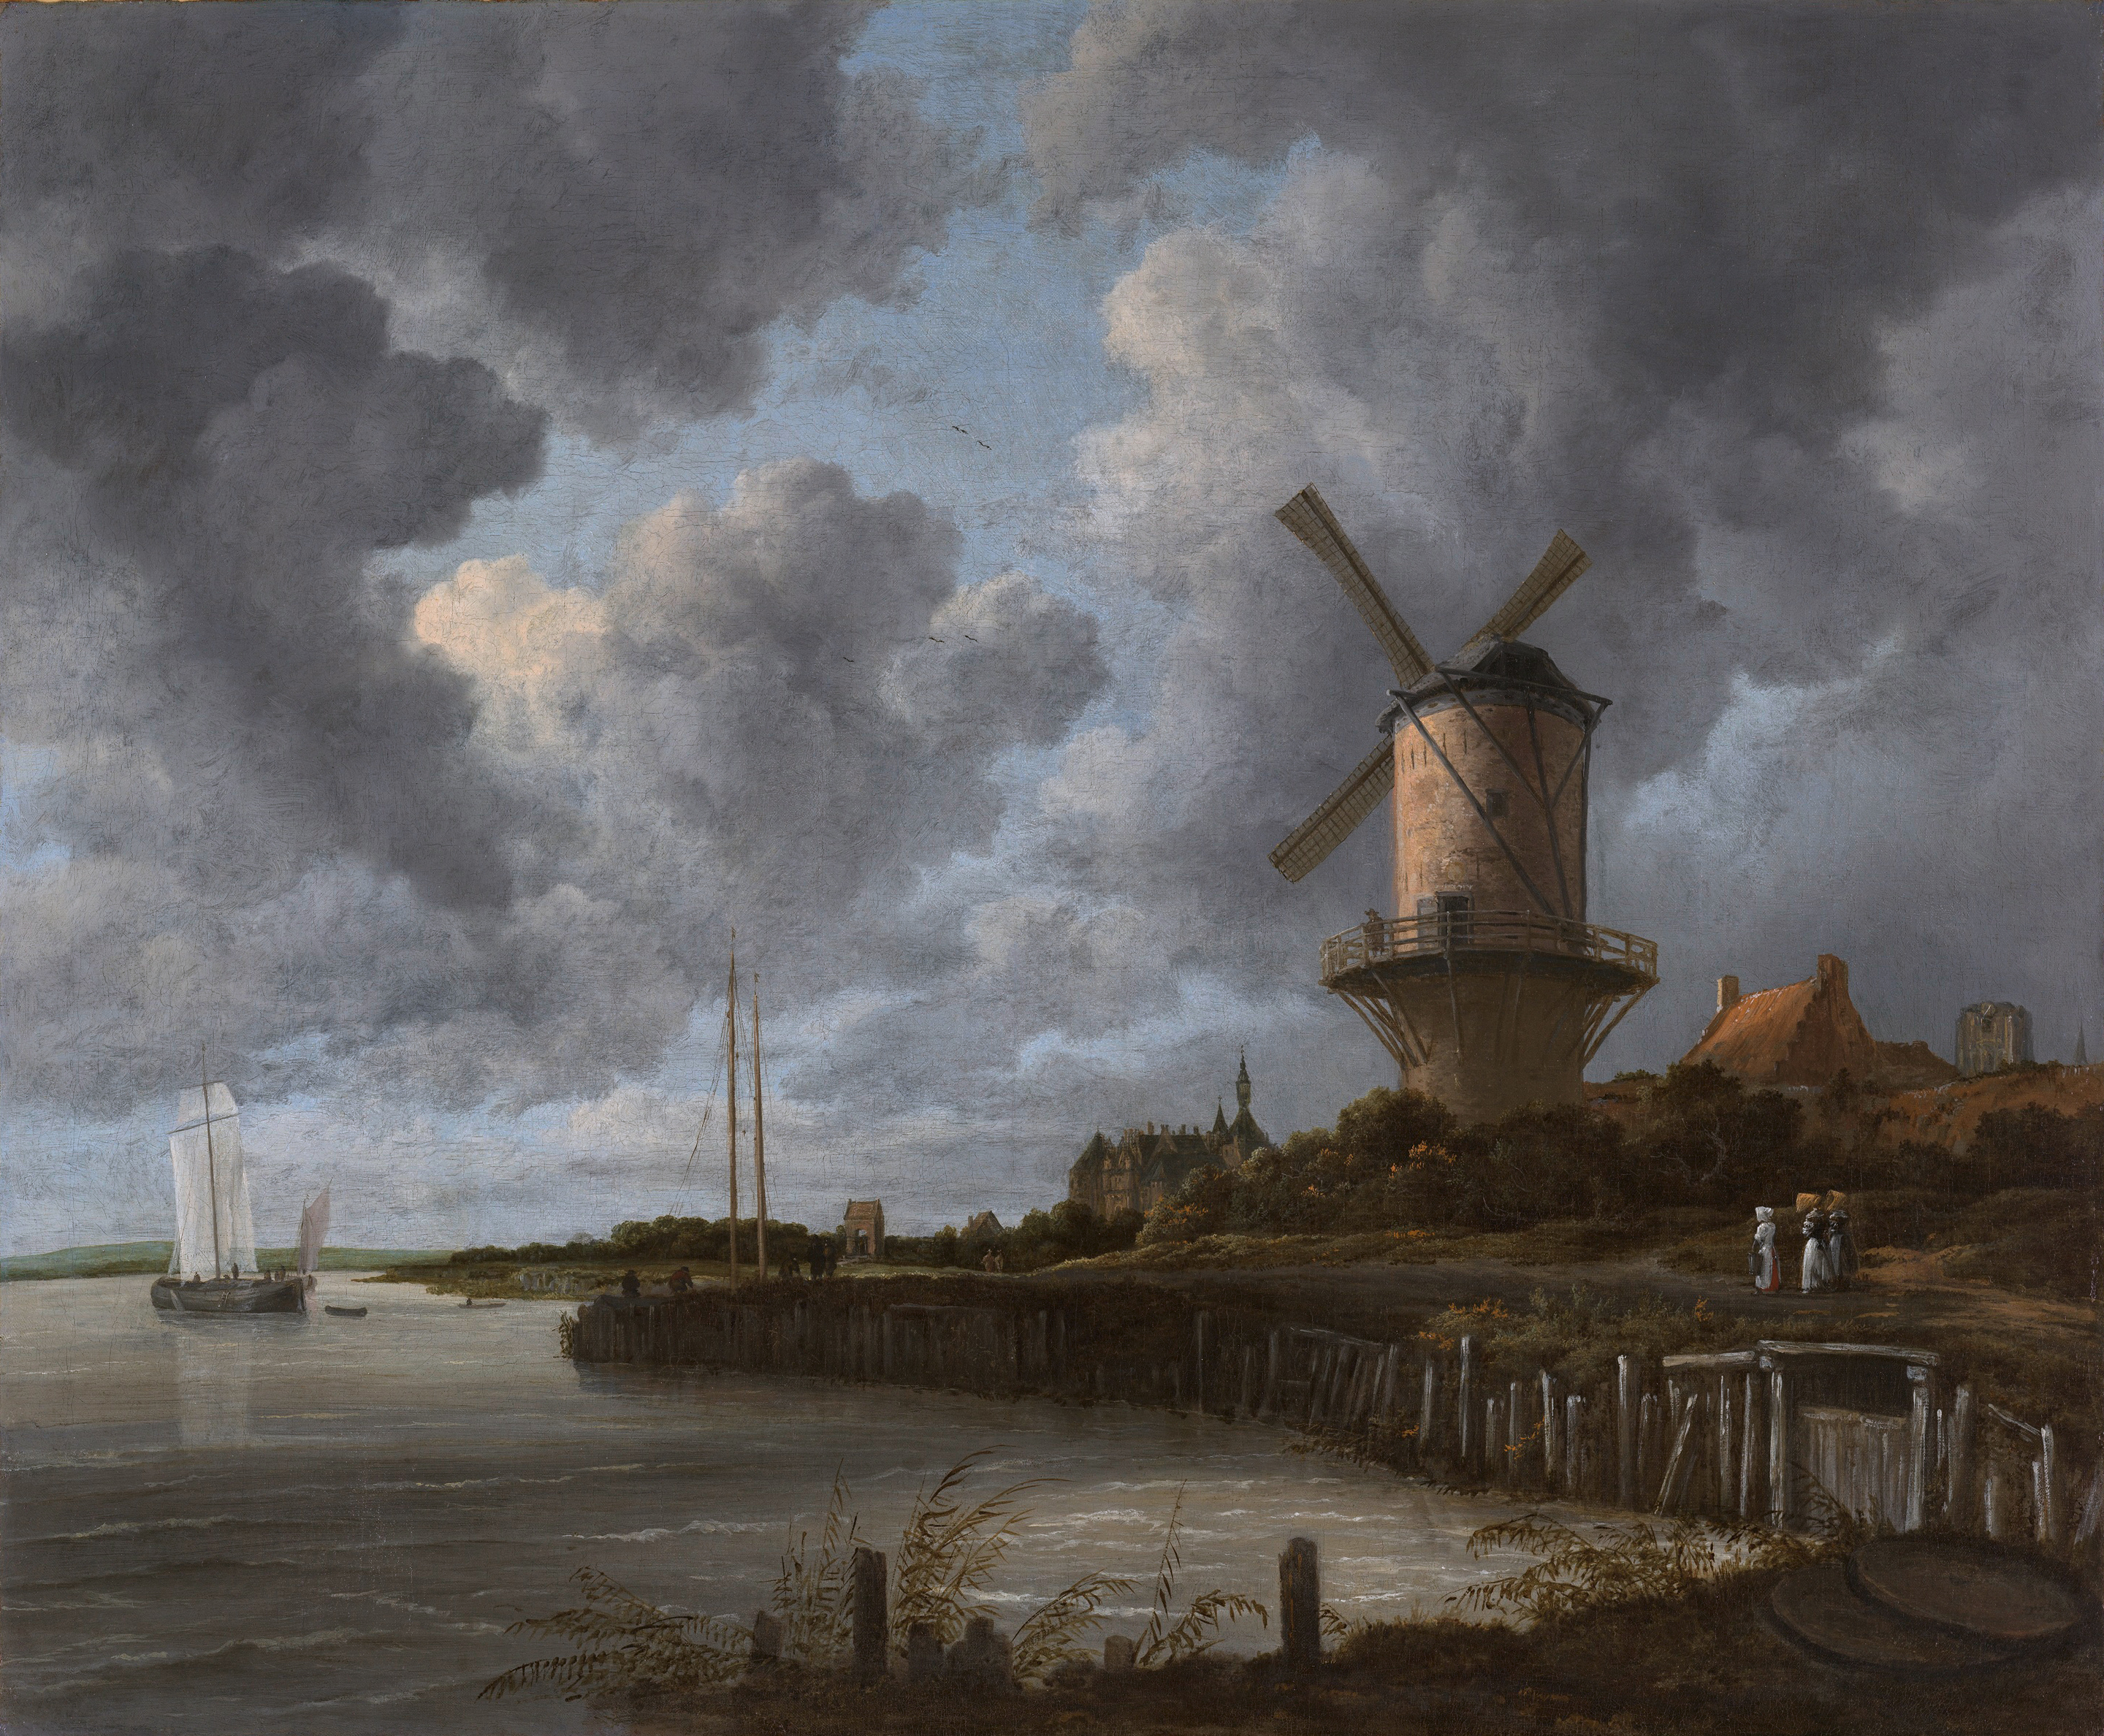 The Windmill At Wijk Bij Duurstede by Jacob van Ruisdael - c. 1670 - 83 x 101 cm Rijksmuseum